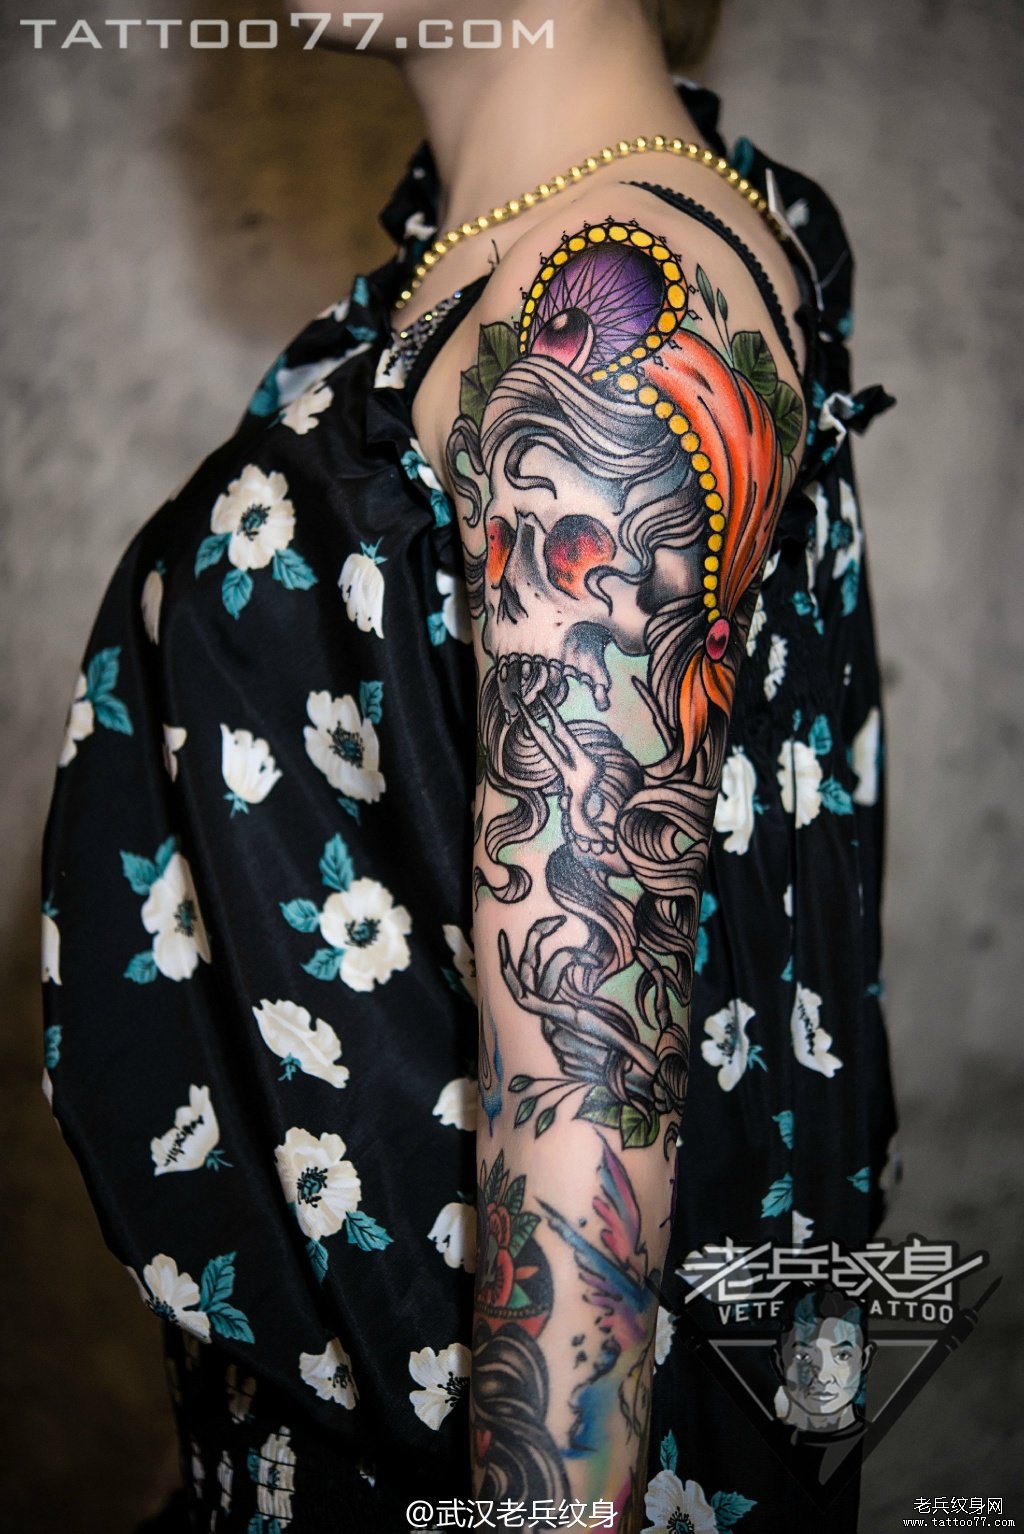 美女超酷的欧美花臂骷髅纹身图案作品